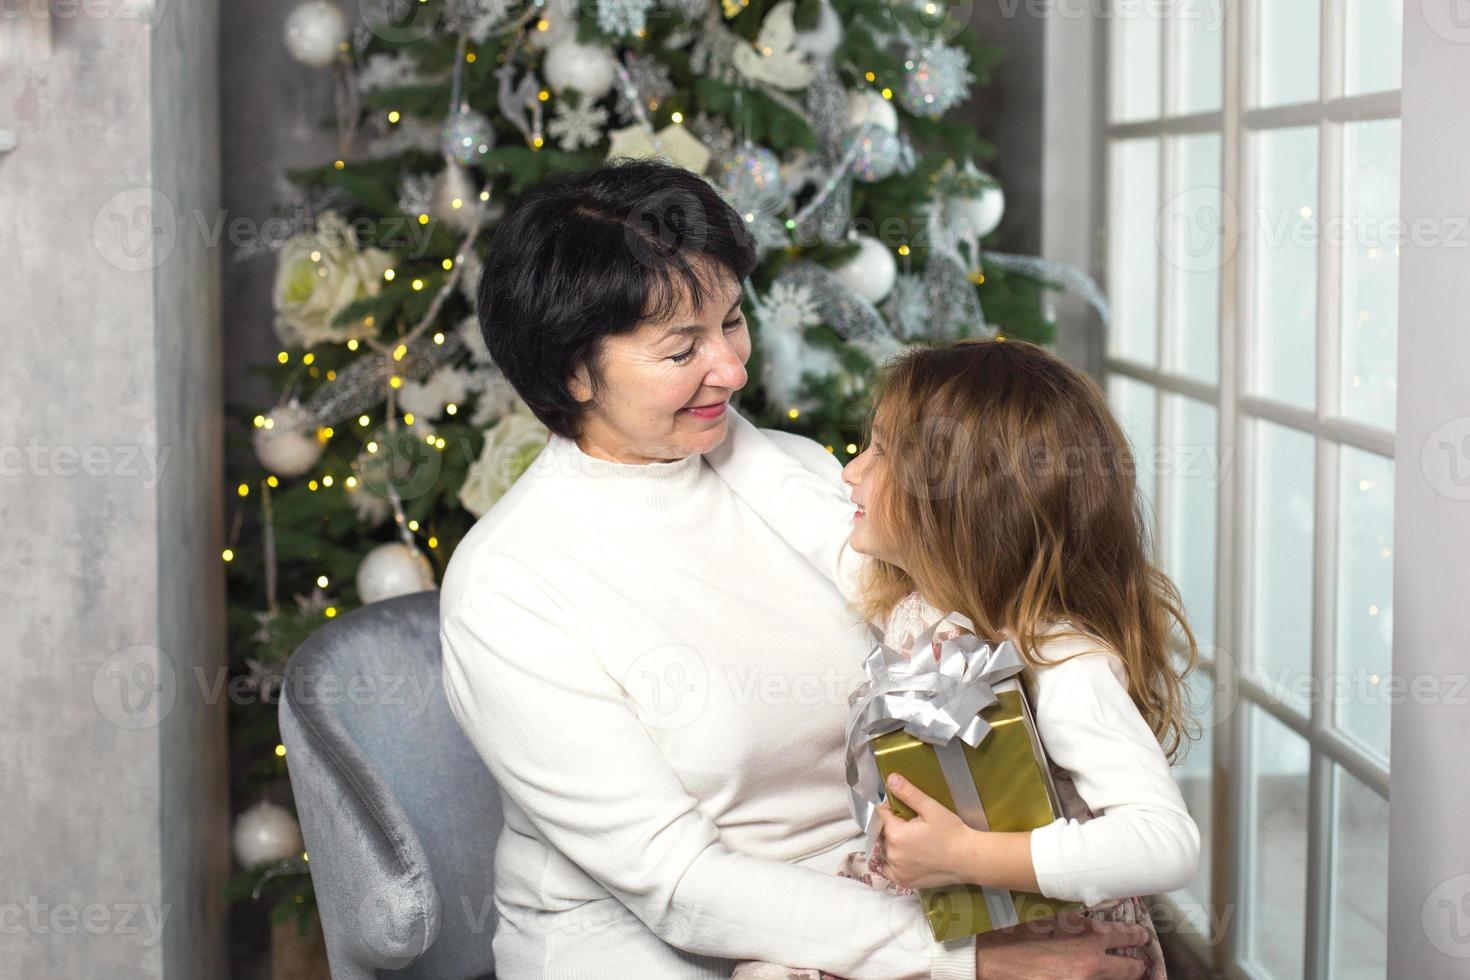 großmutter mit einem kleinen mädchen auf dem hintergrund von weihnachtsdekorationen und einem großen fenster. familienurlaub, emotionen, geschenkbox. Enkelin auf Omas Schoß. Neujahr foto